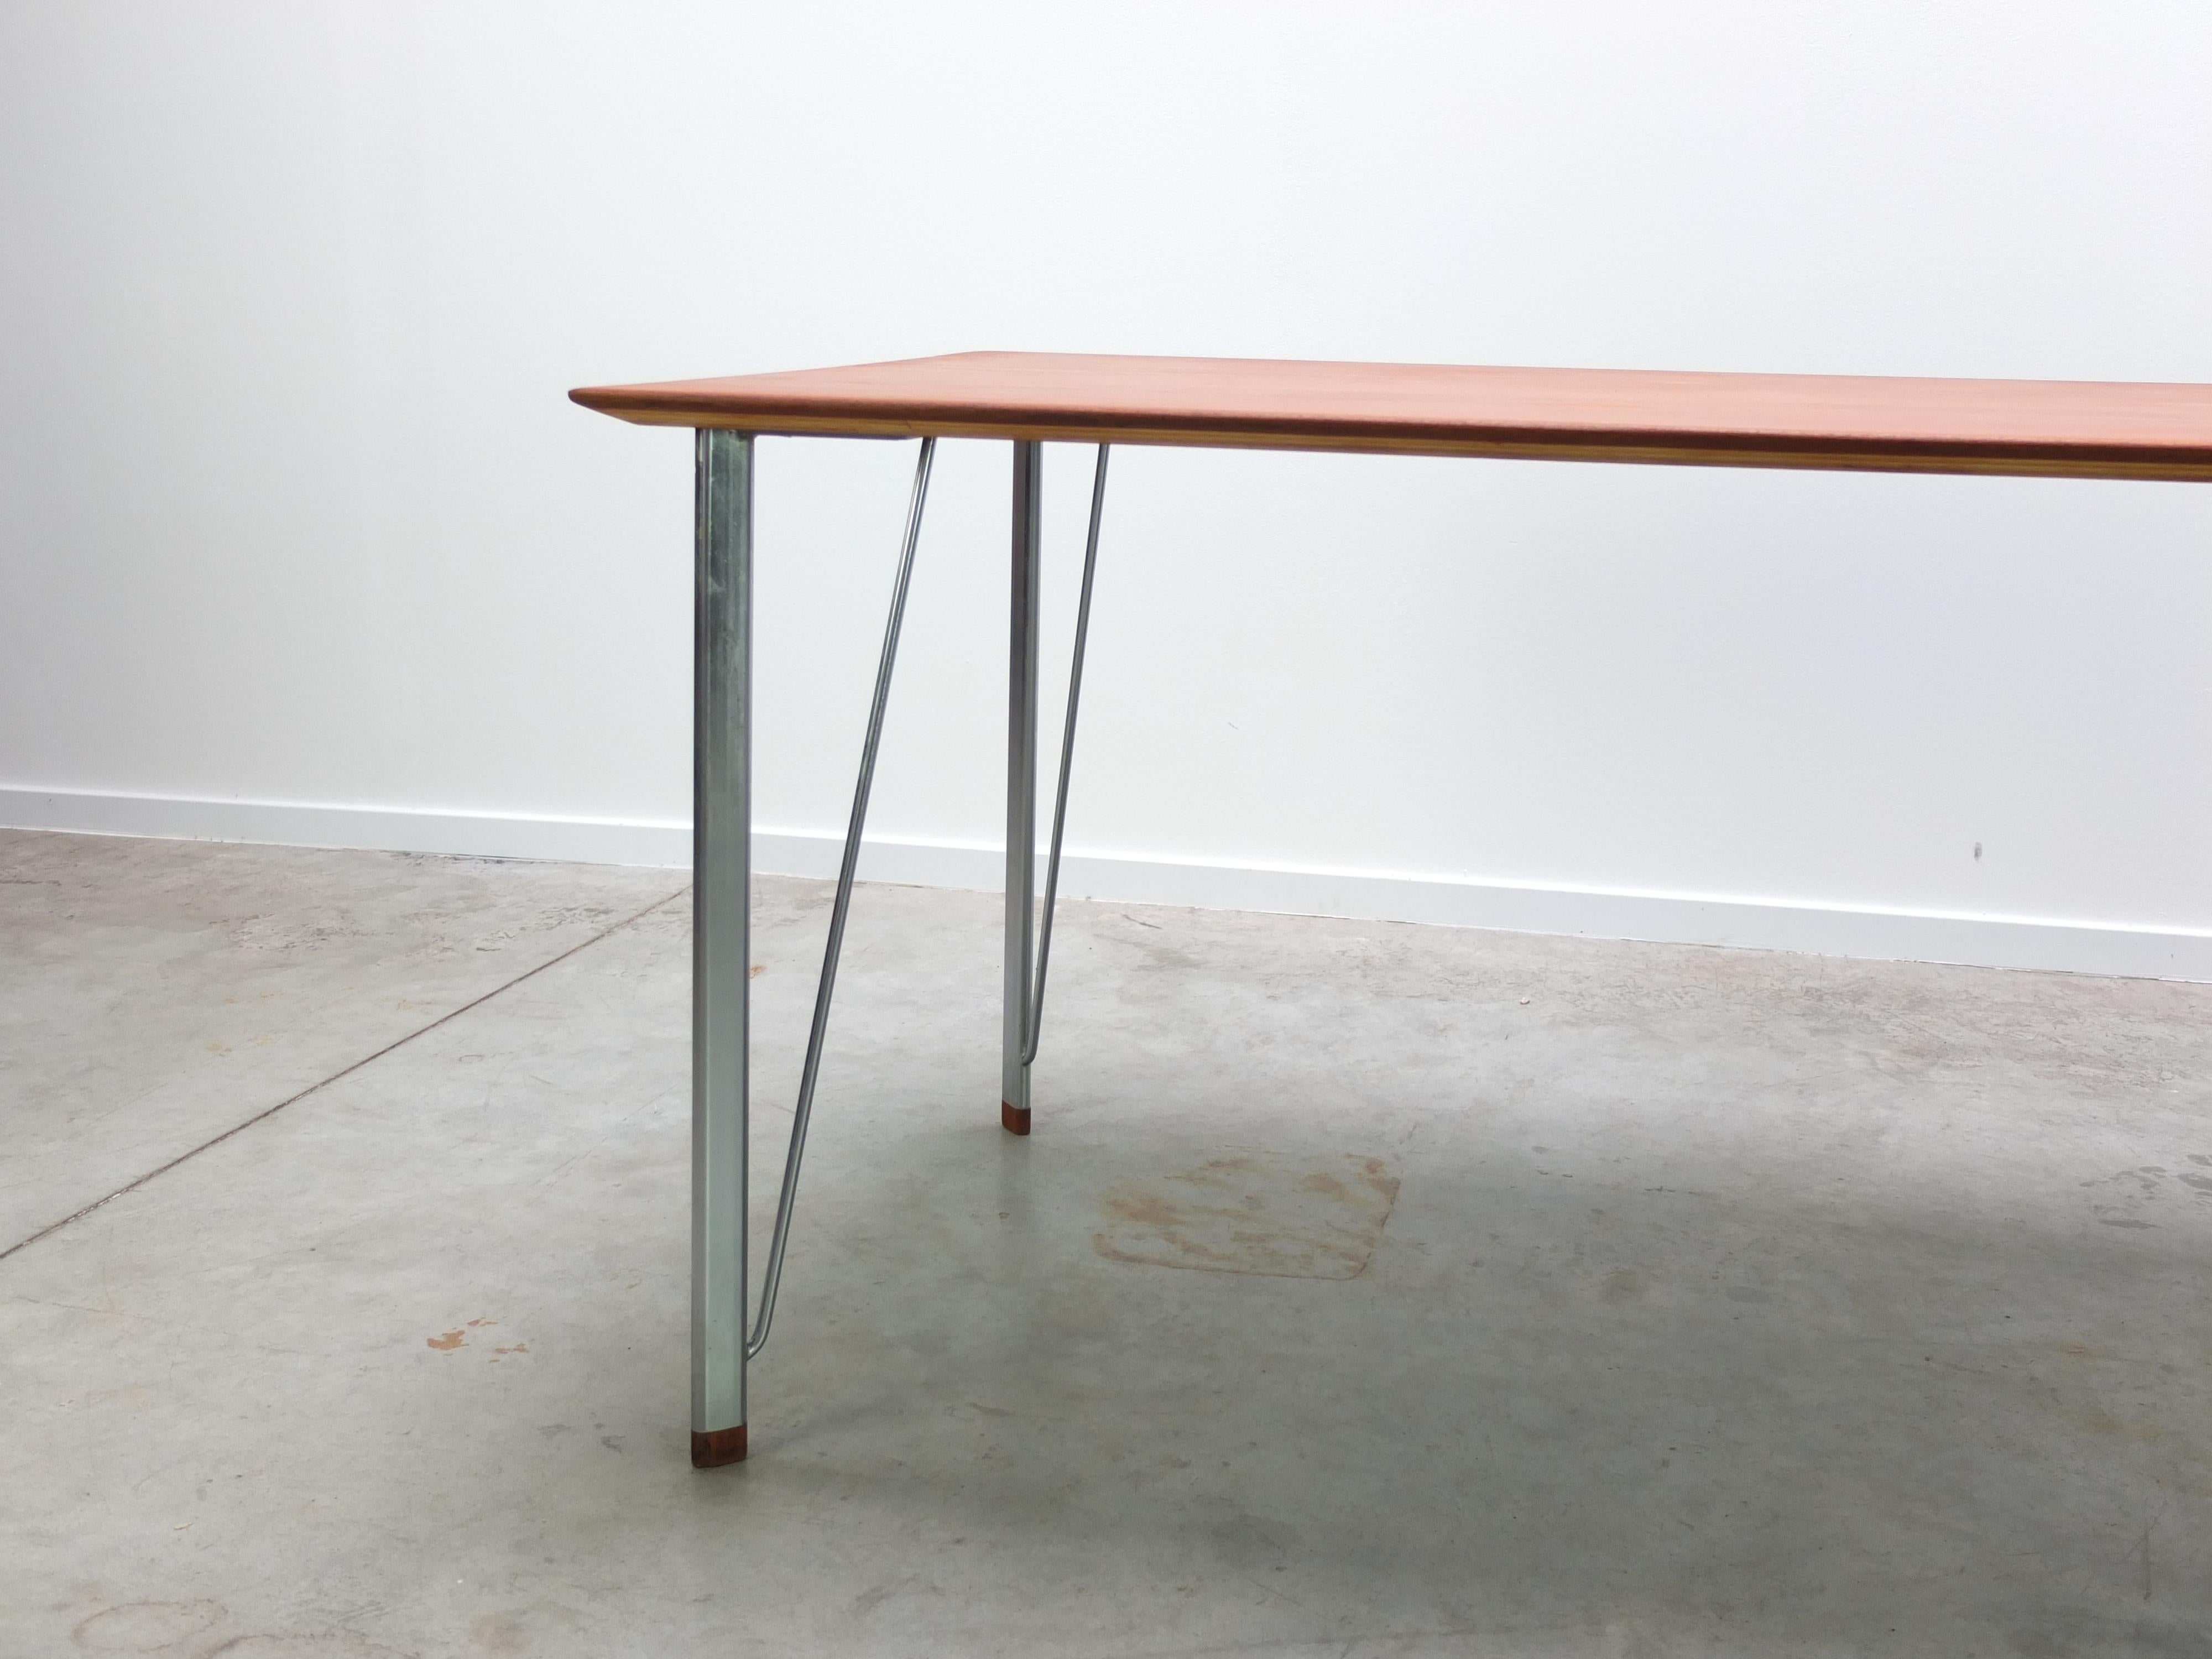 Scandinavian Modern Early Teak 'Model 3605' Table by Arne Jacobsen for Fritz Hansen, 1950s For Sale